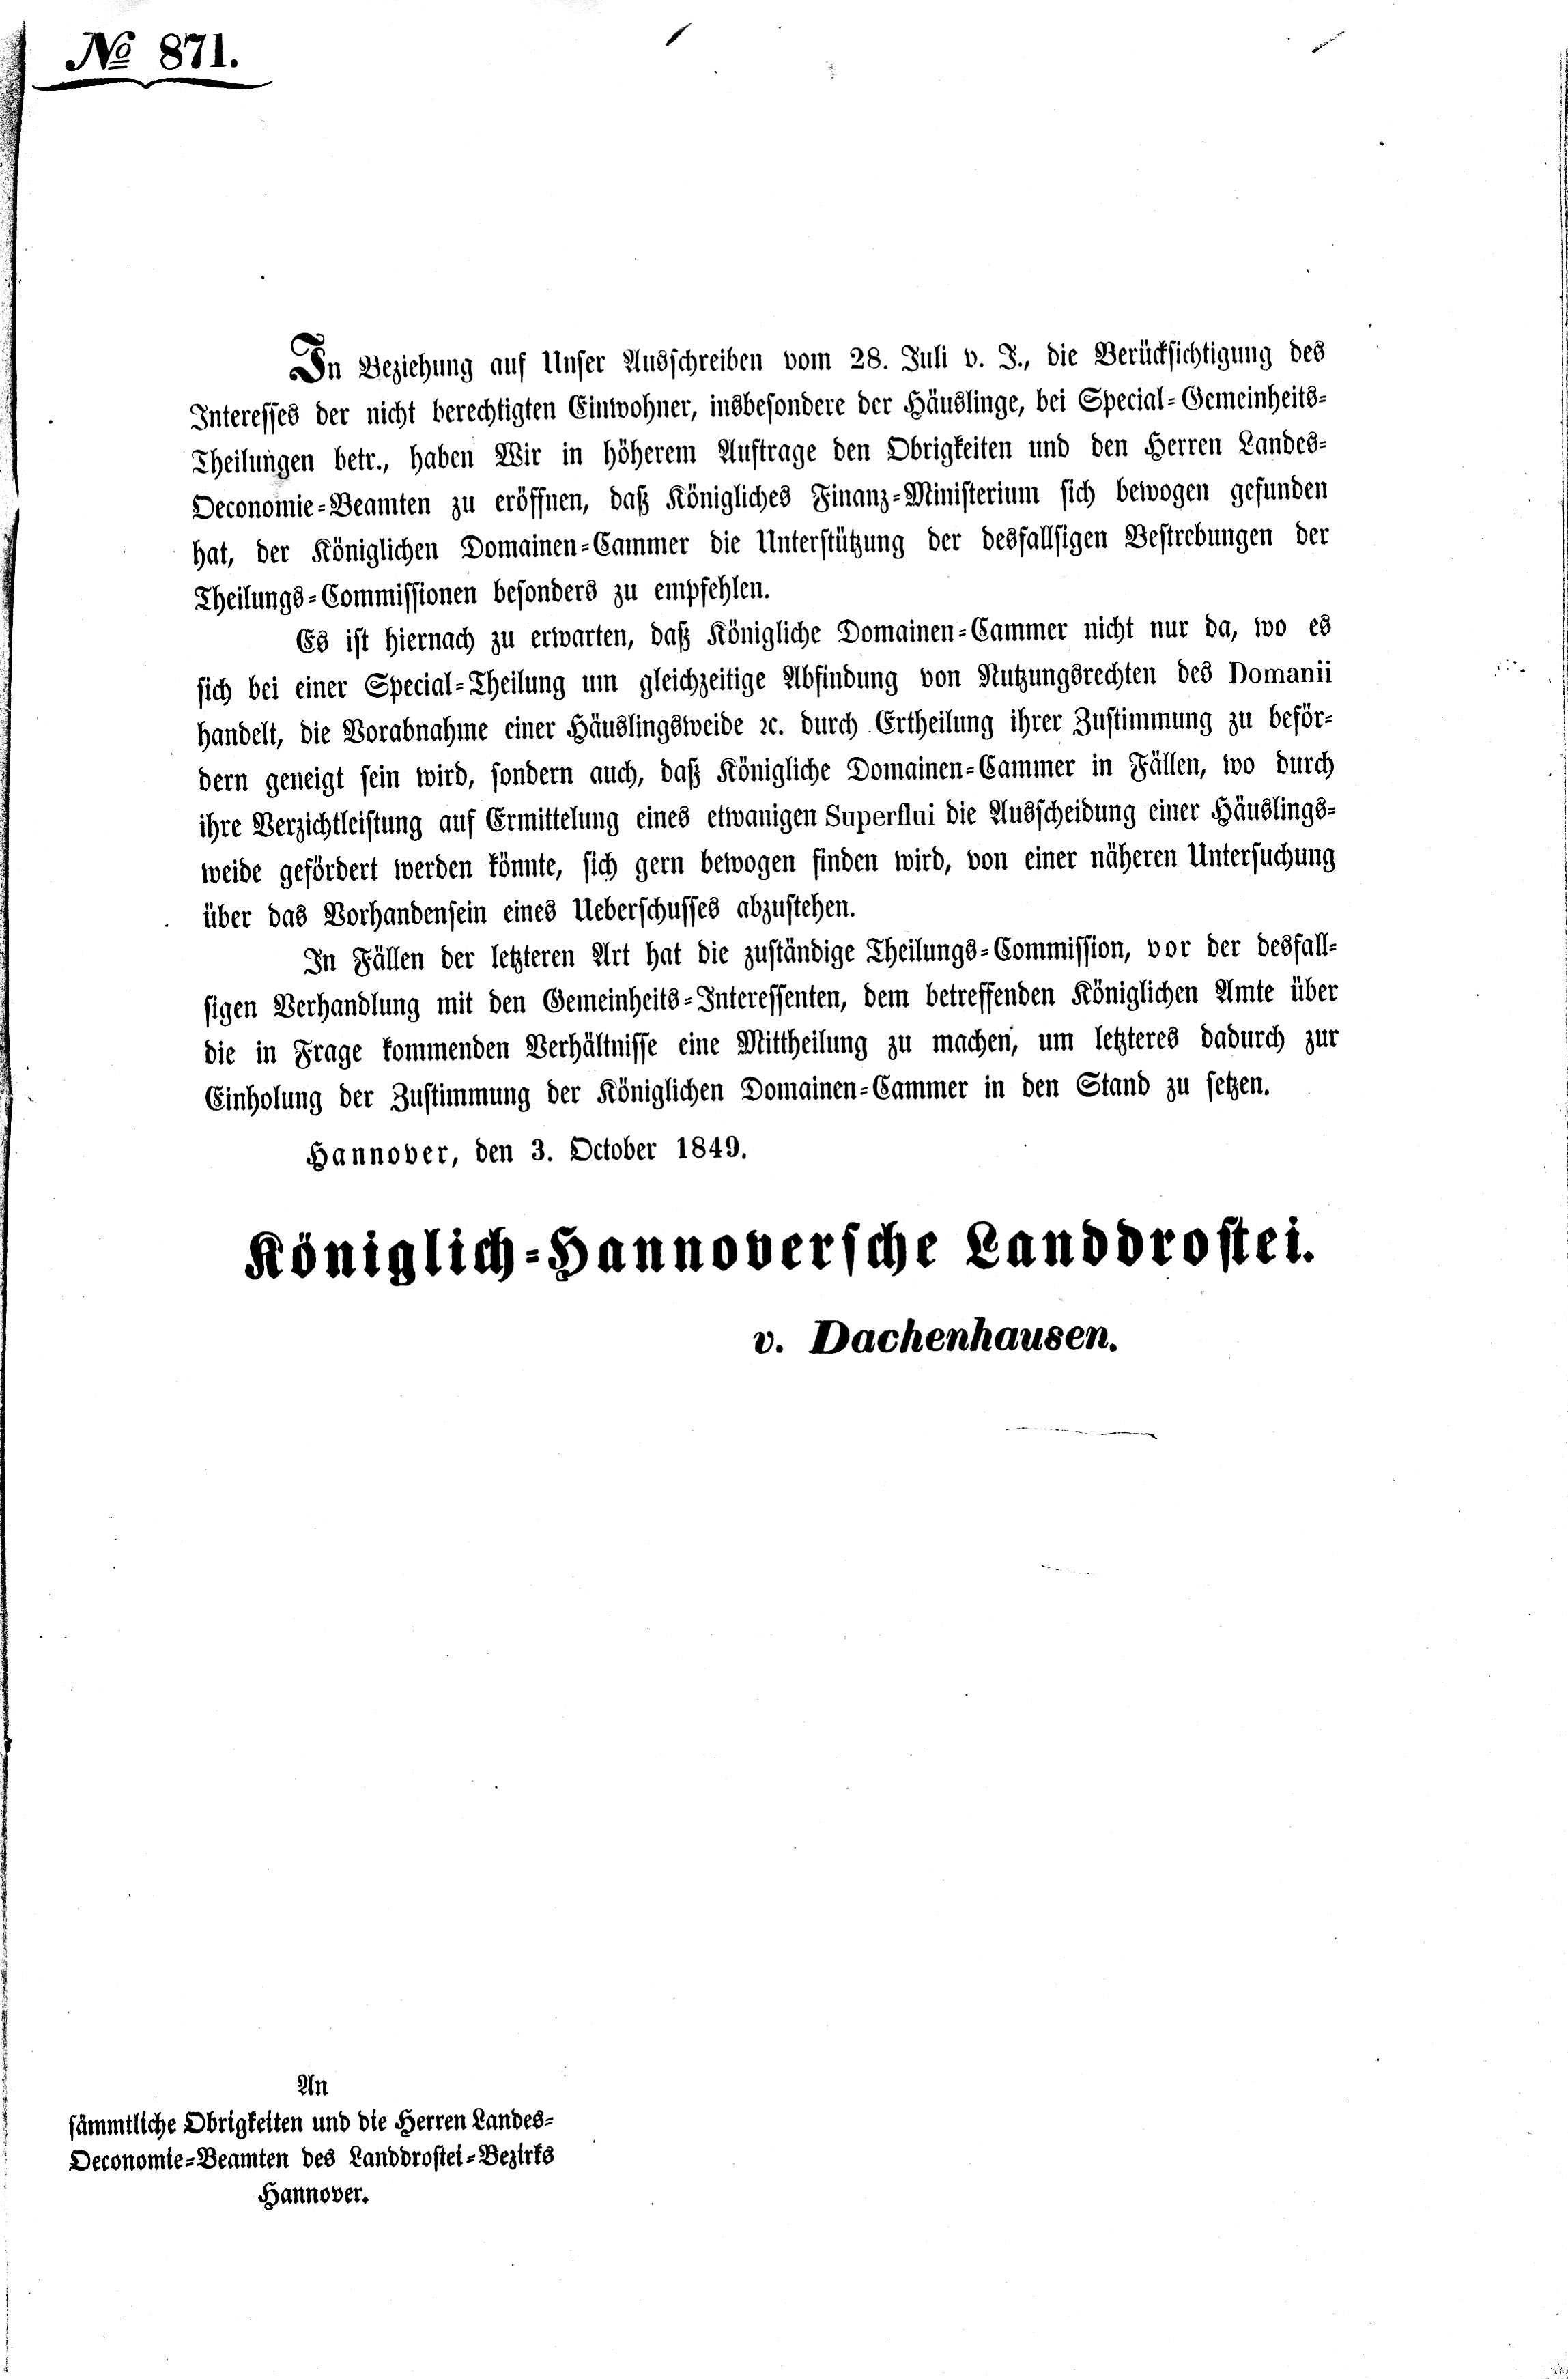 Schreiben der Königlich-Hannoverschen Landdrostei v. 1849 (Kreismuseum Syke CC BY-NC-SA)